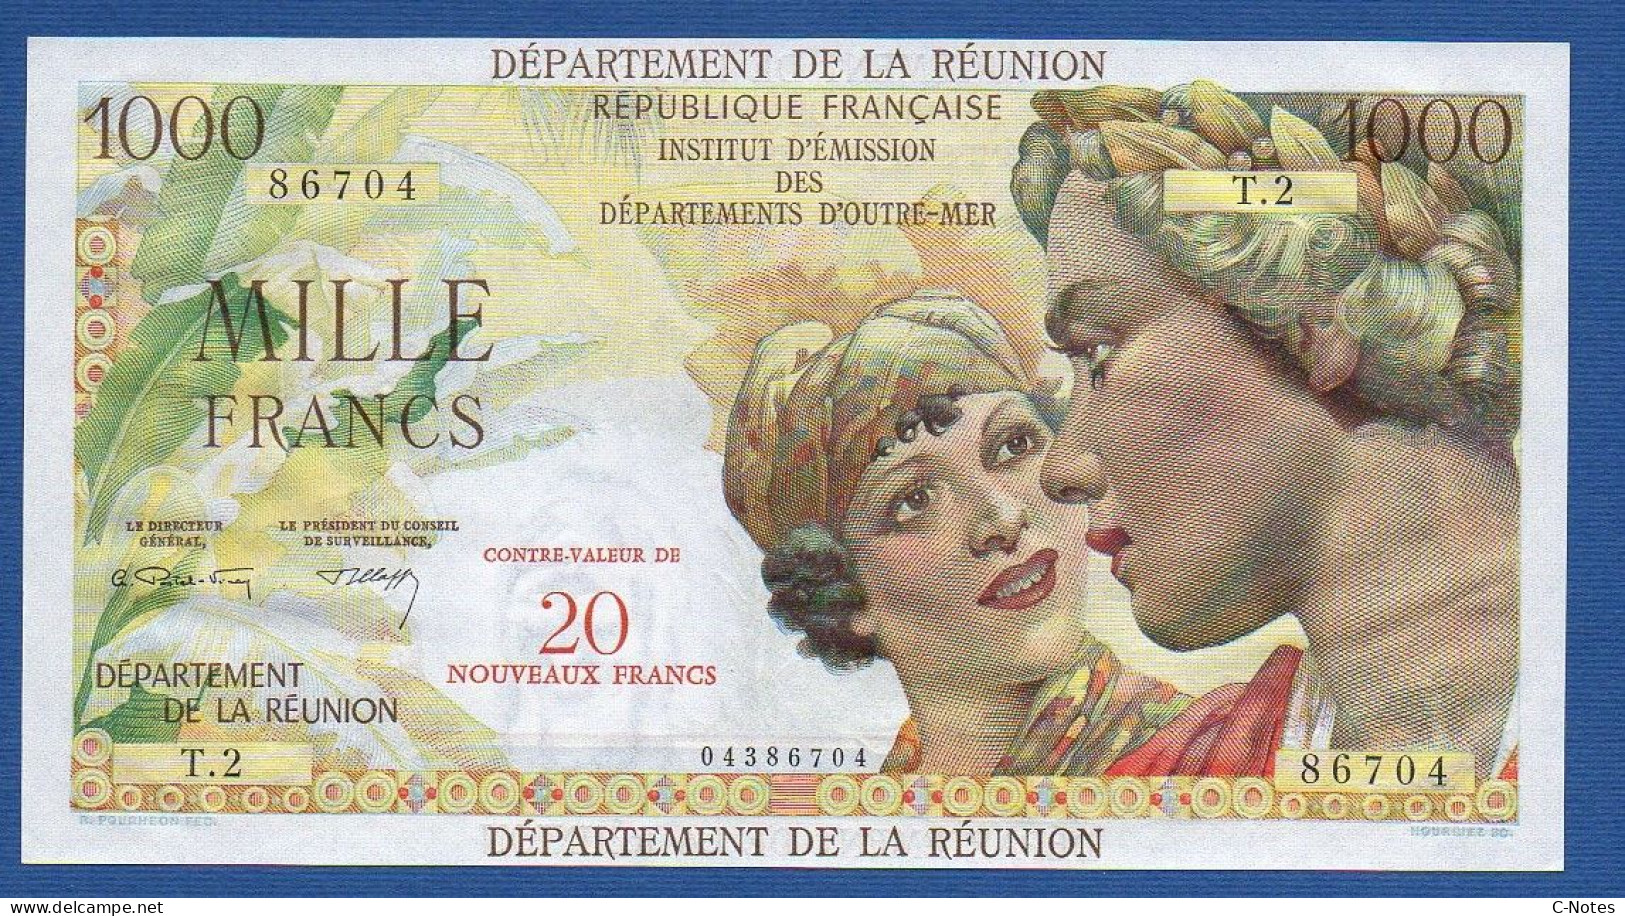 RÉUNION - P.55b – 20 Nouveaux Francs ND (1971) UNC, S/n T.2 86704 - Riunione